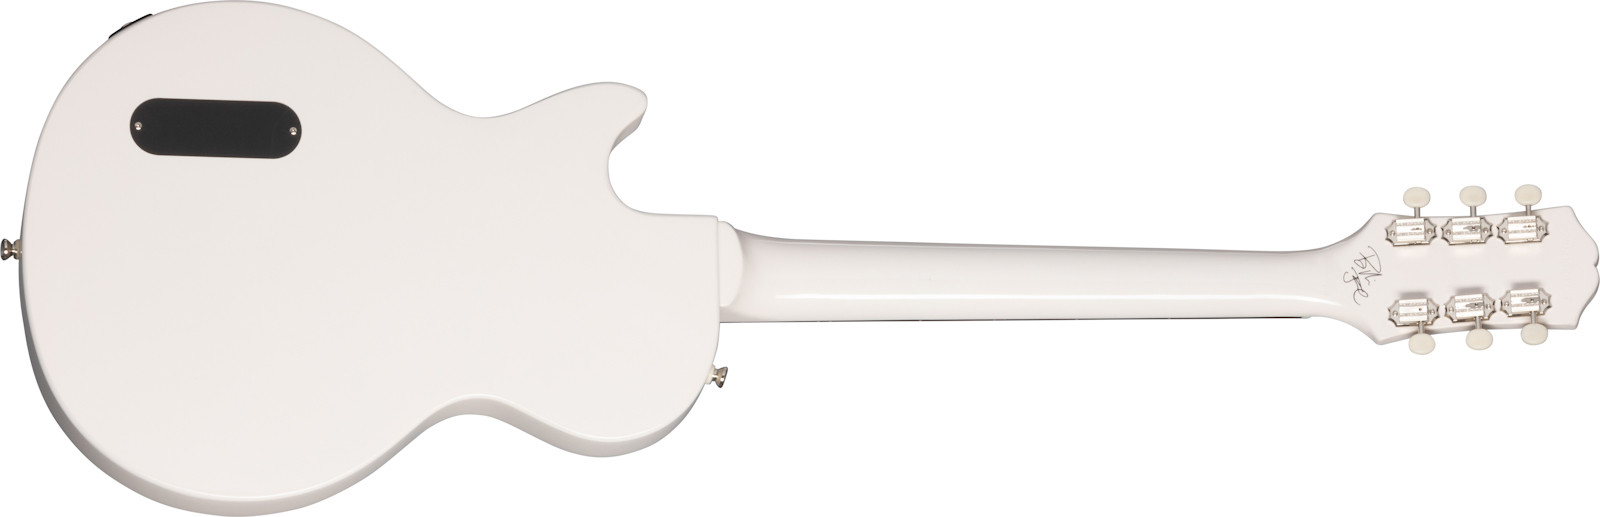 Epiphone Billie Joe Armstrong Les Paul Junior Signature S P90 Ht Lau - Classic White - Single cut electric guitar - Variation 1